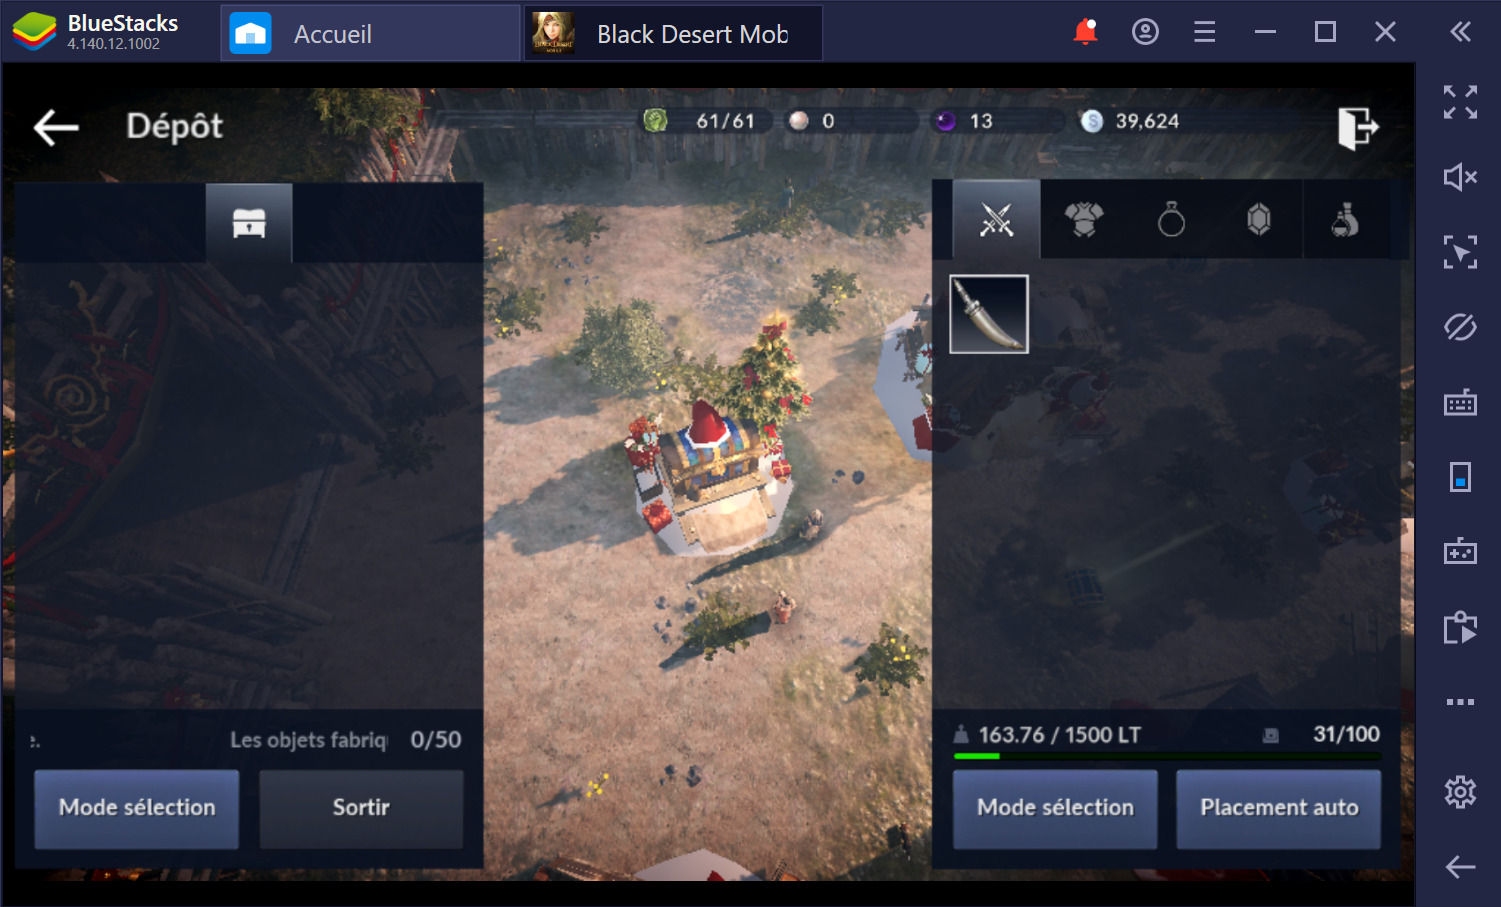 Black Desert Mobile sur PC : Les meilleurs trucs et astuces pour débutants